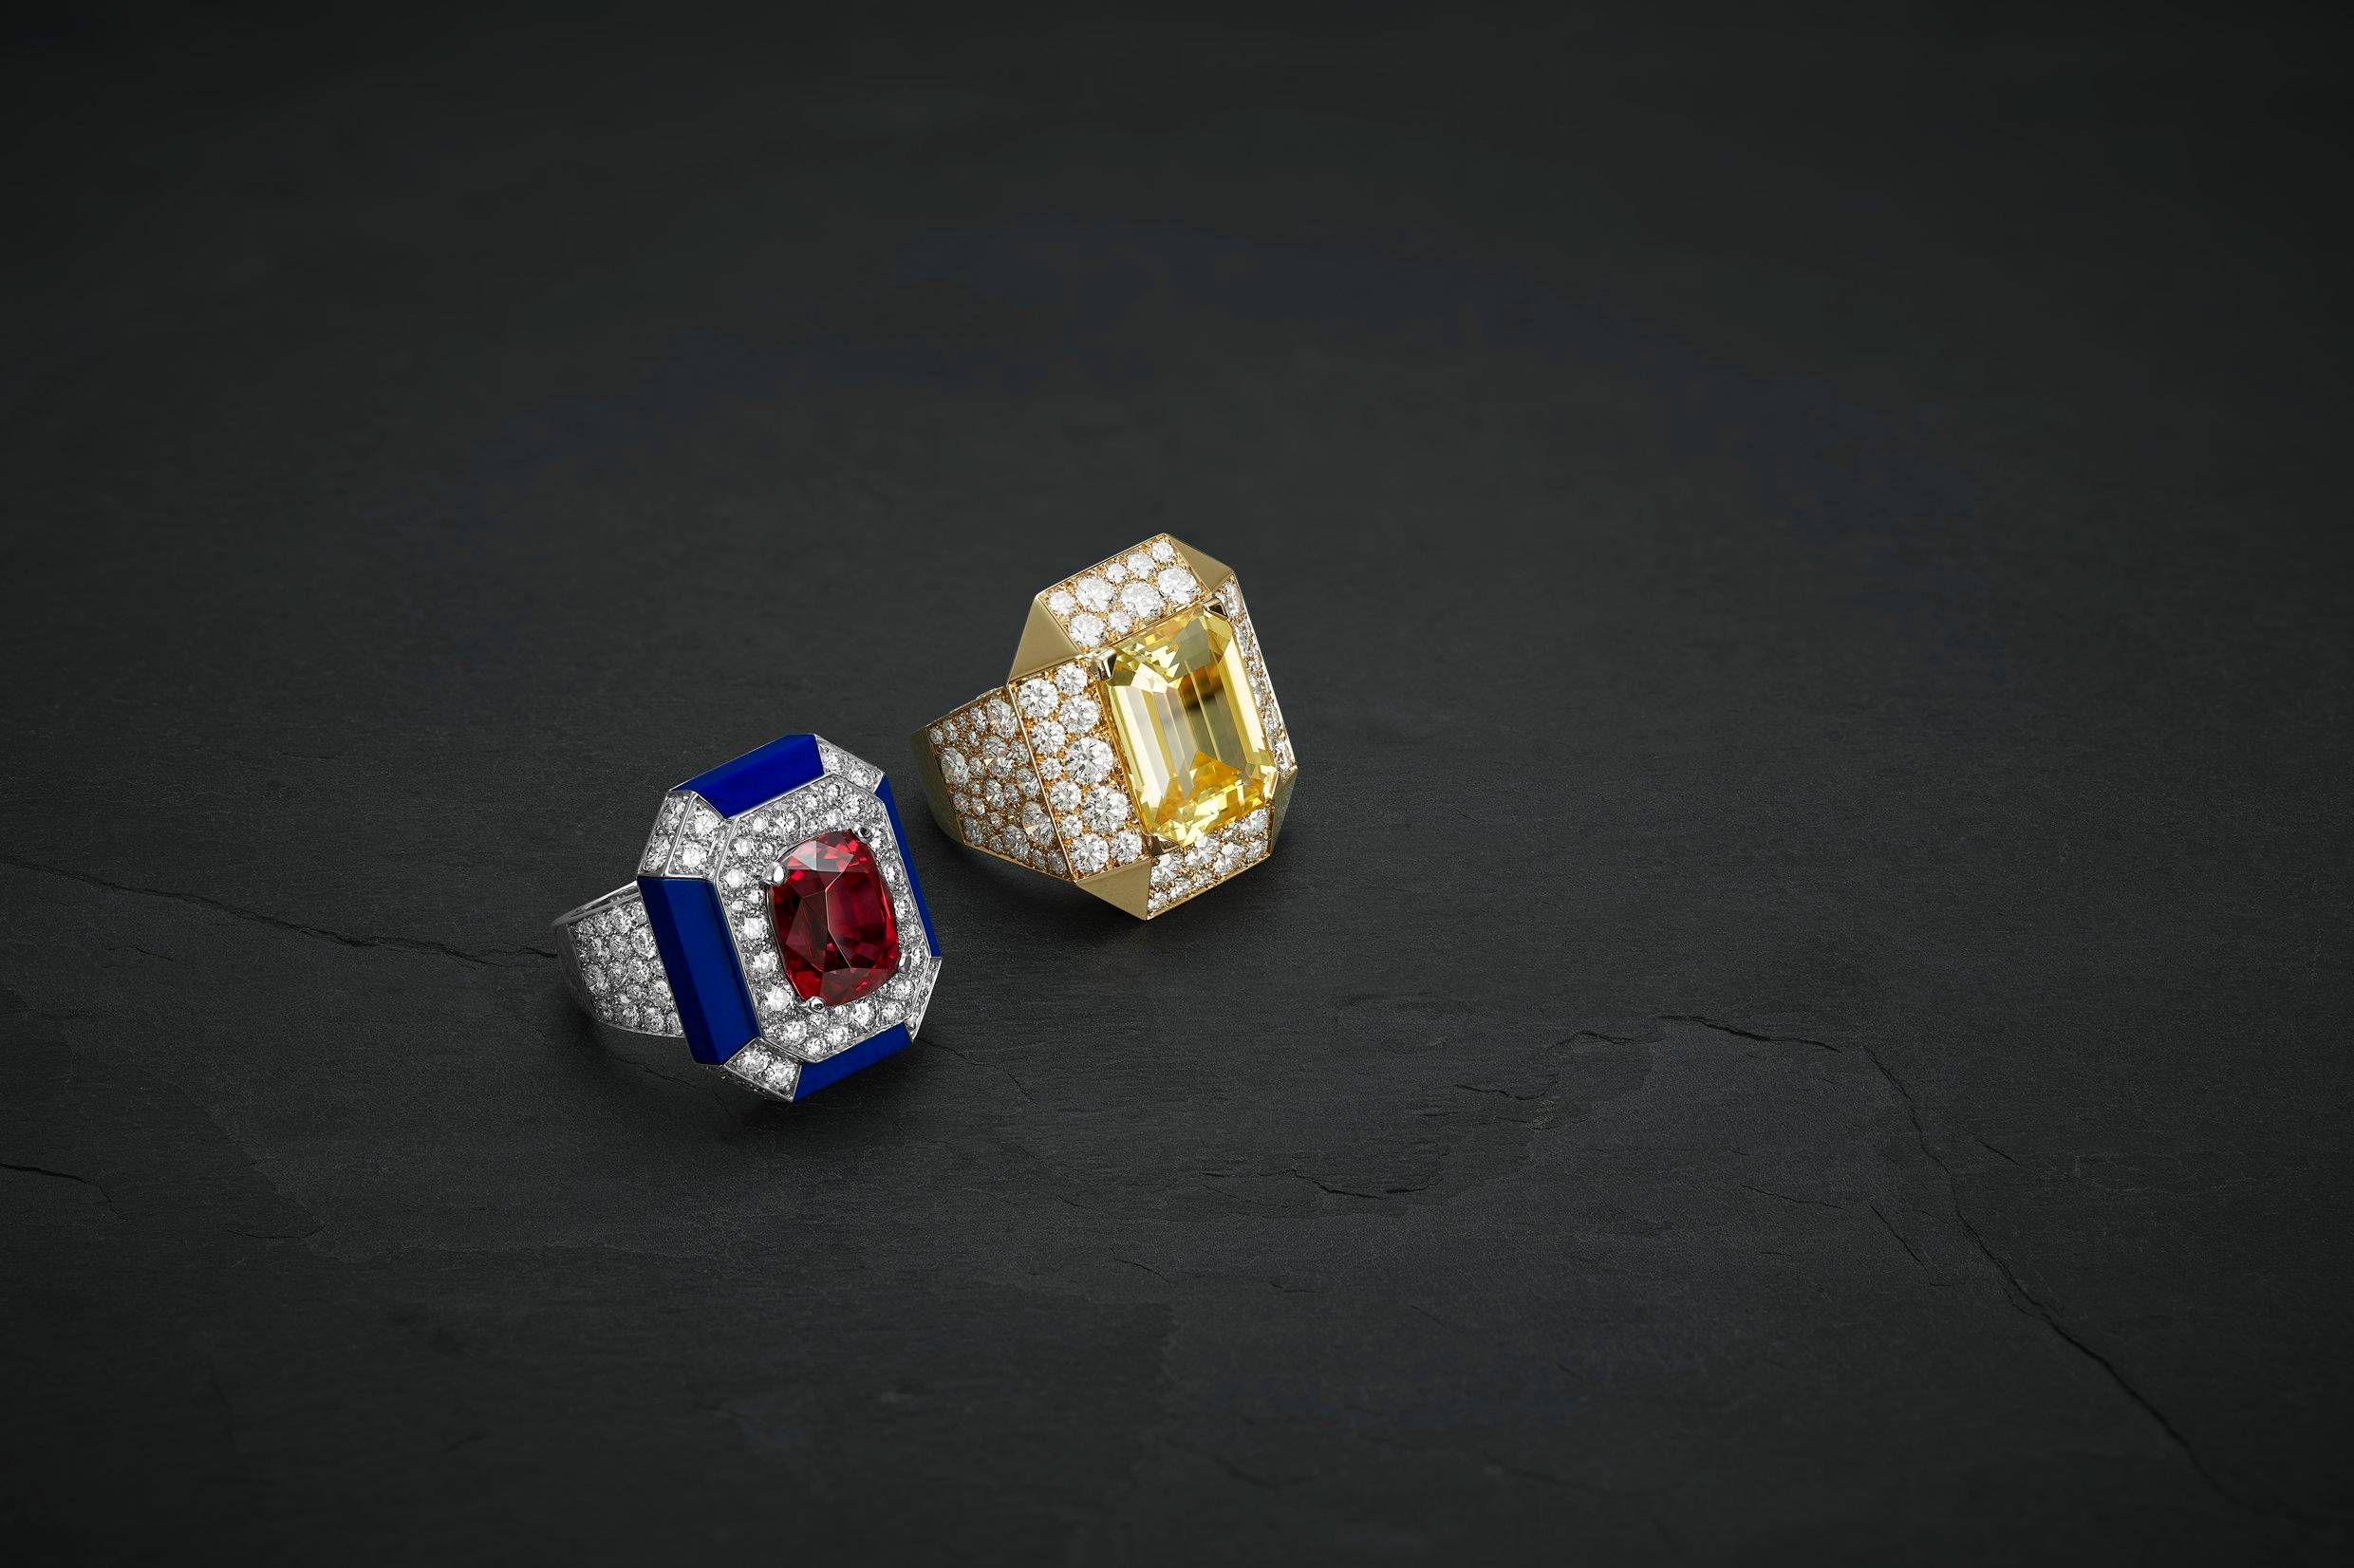 Bague CROISIERE en or blanc, diamants, spinelle rouge et lapis lazuli. Bague CAMBON en or jaune, diamants et saphir jaune.